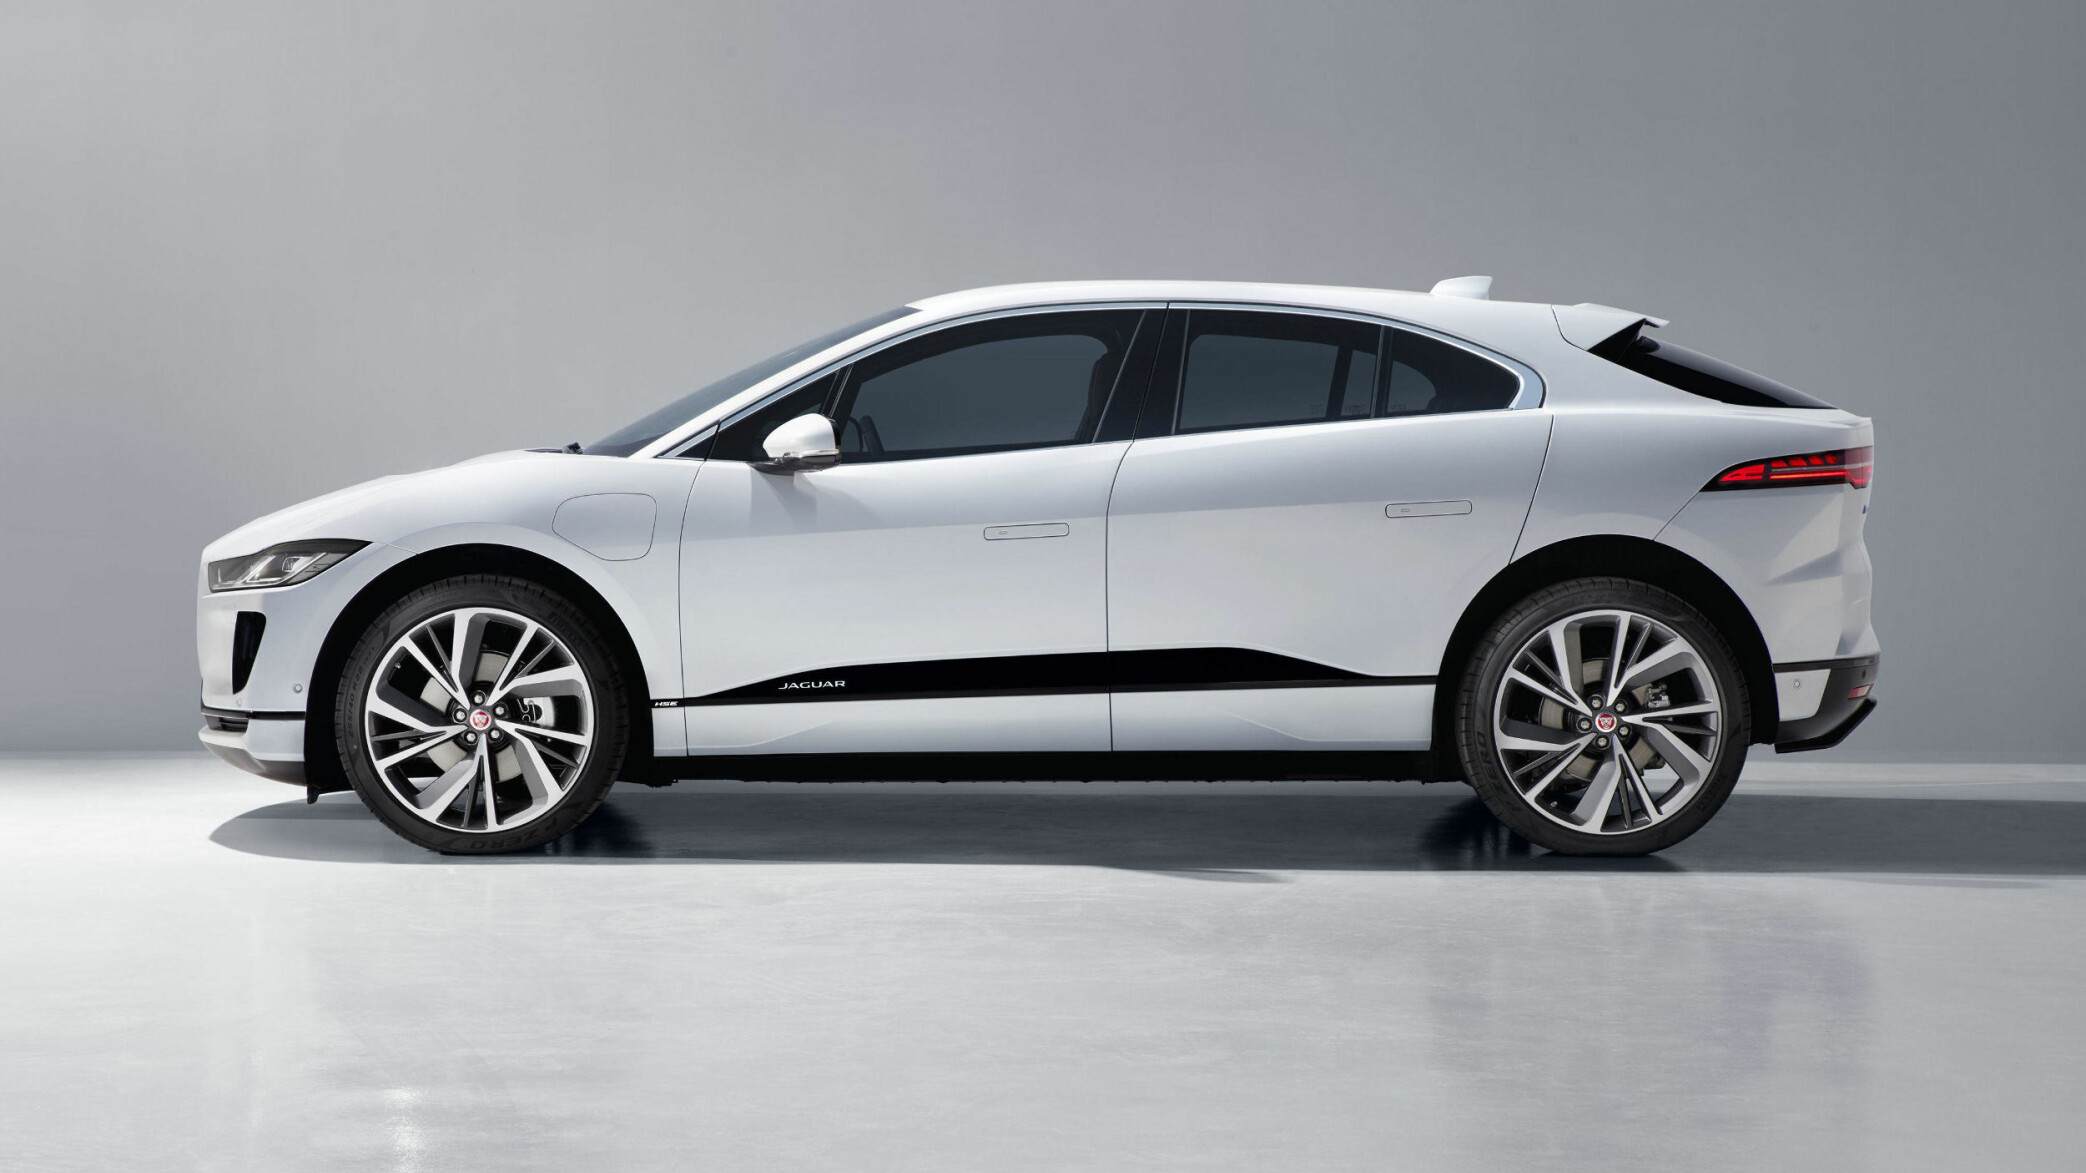 SLIK SER I-PACE UT: Jaguar avduket produksjonsmodellen av sin første elbil I-Pace den 1. mars 2018. Bilen er svært lik konseptmodellen som ble avduket i november 2016.